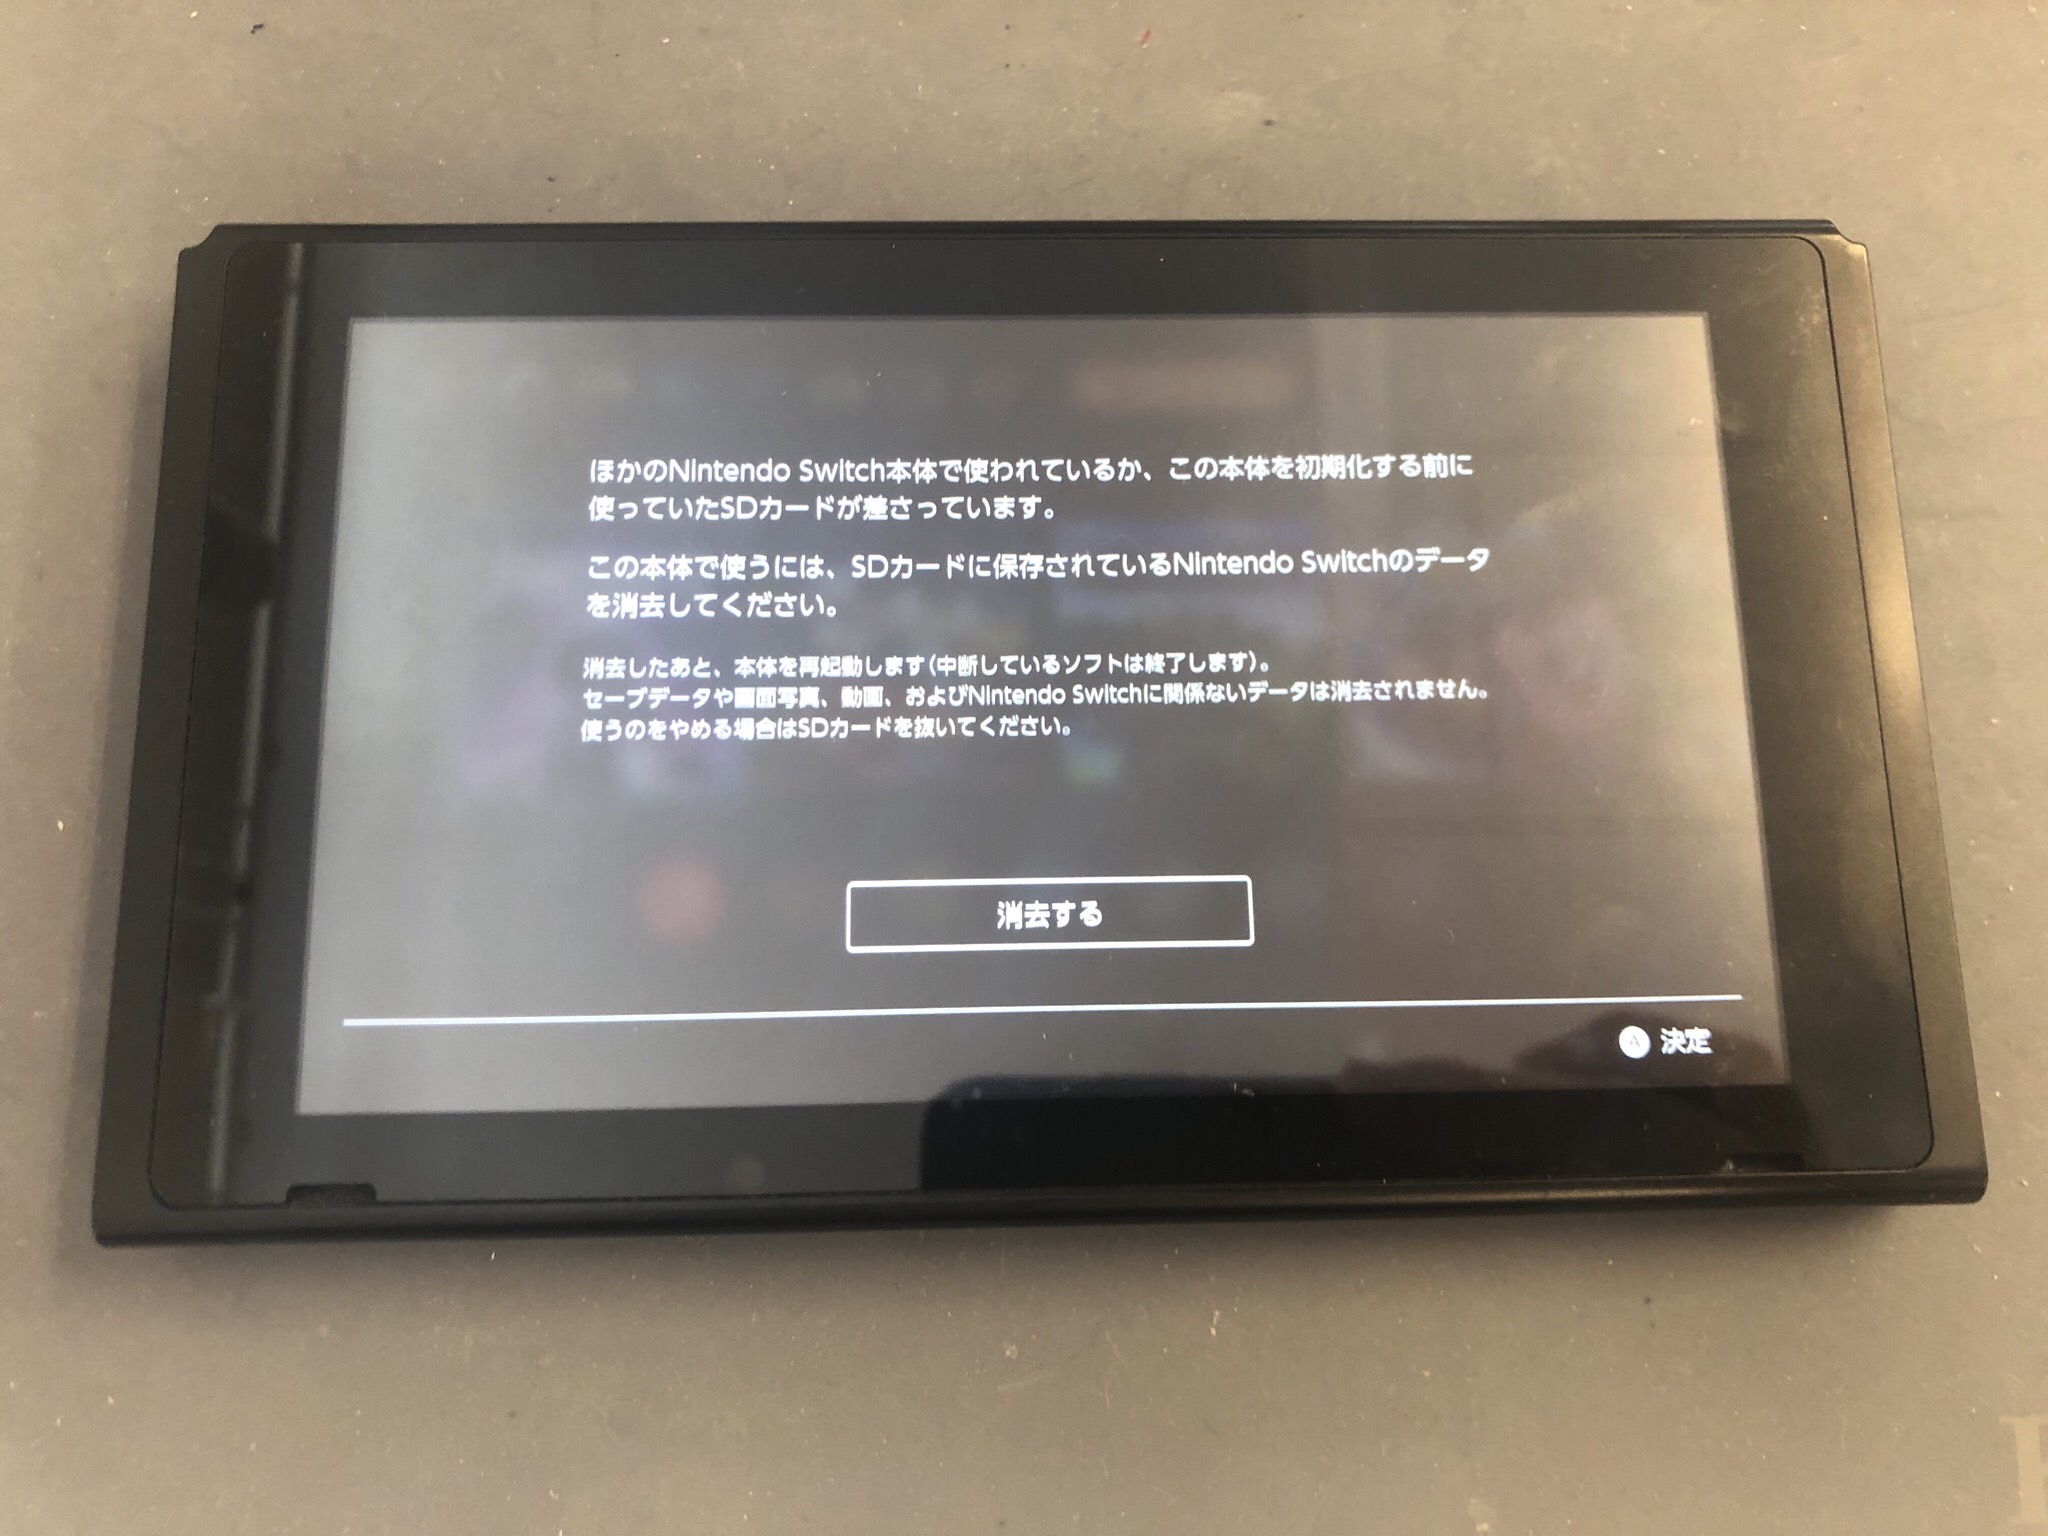 【Nintendo Switch】microSDカードが読み込まれておらず、「差さっていません」表記されてる端末 | Switch